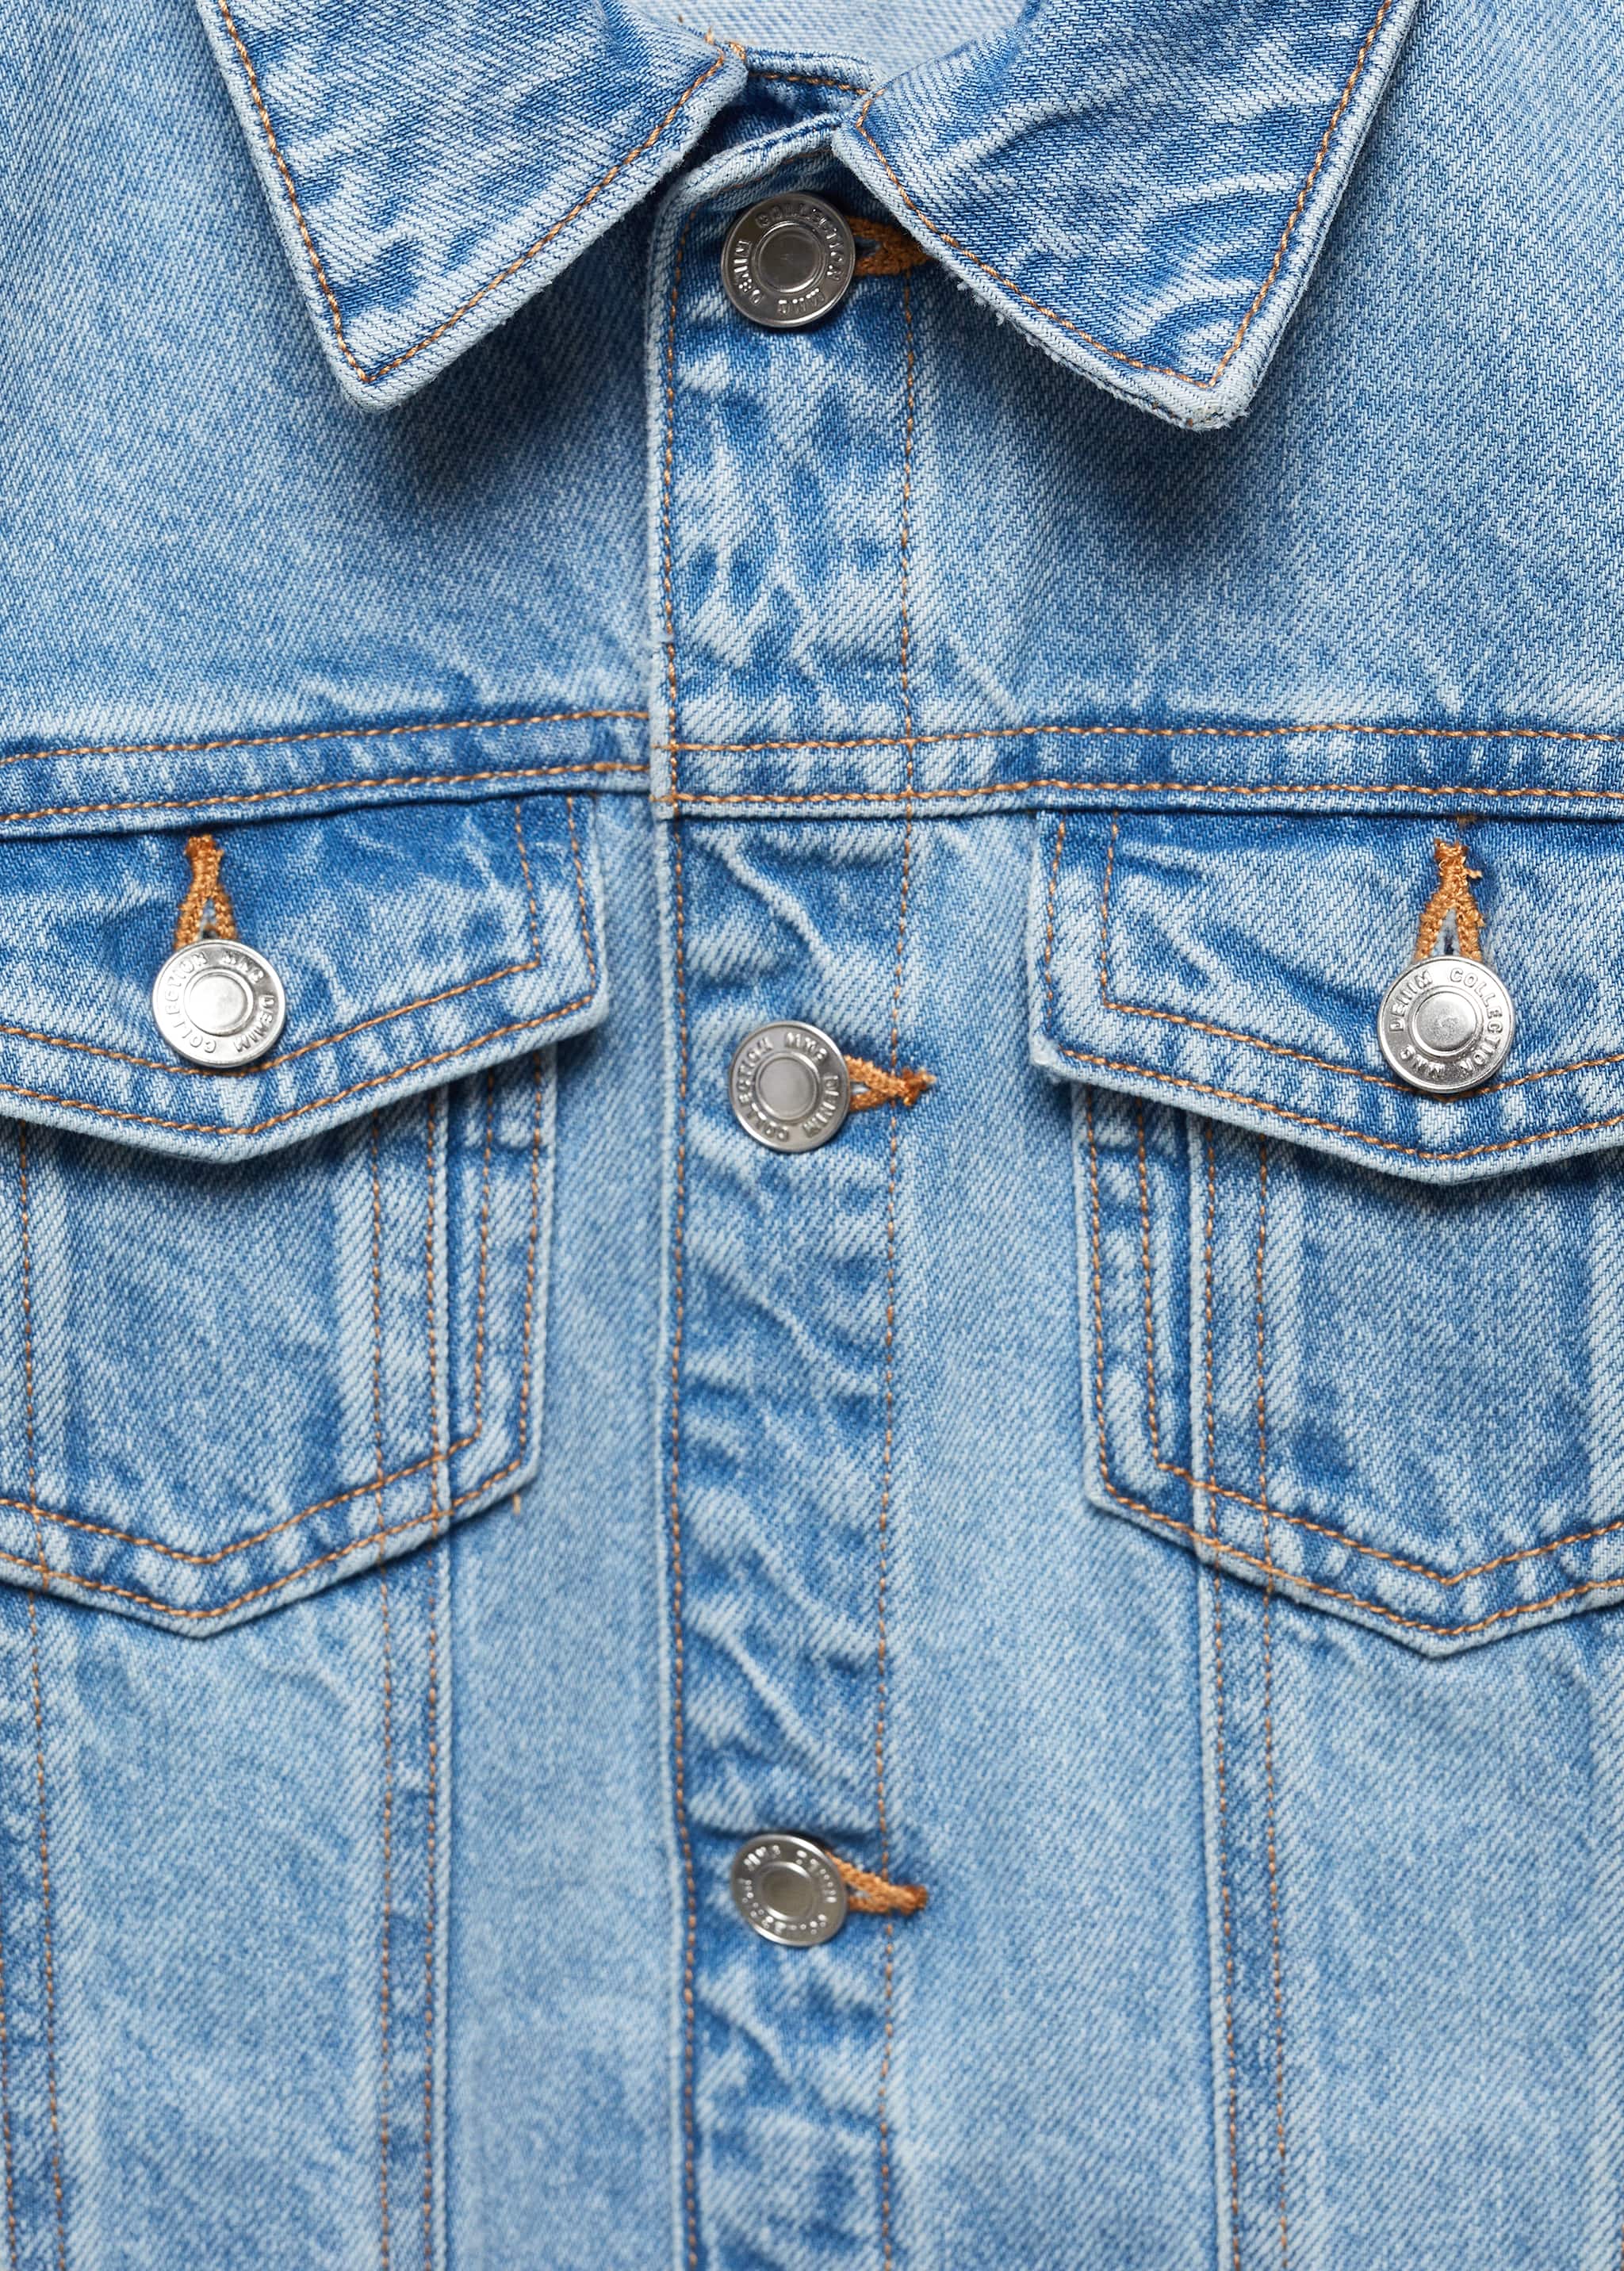 Pockets denim jacket - Details of the article 8